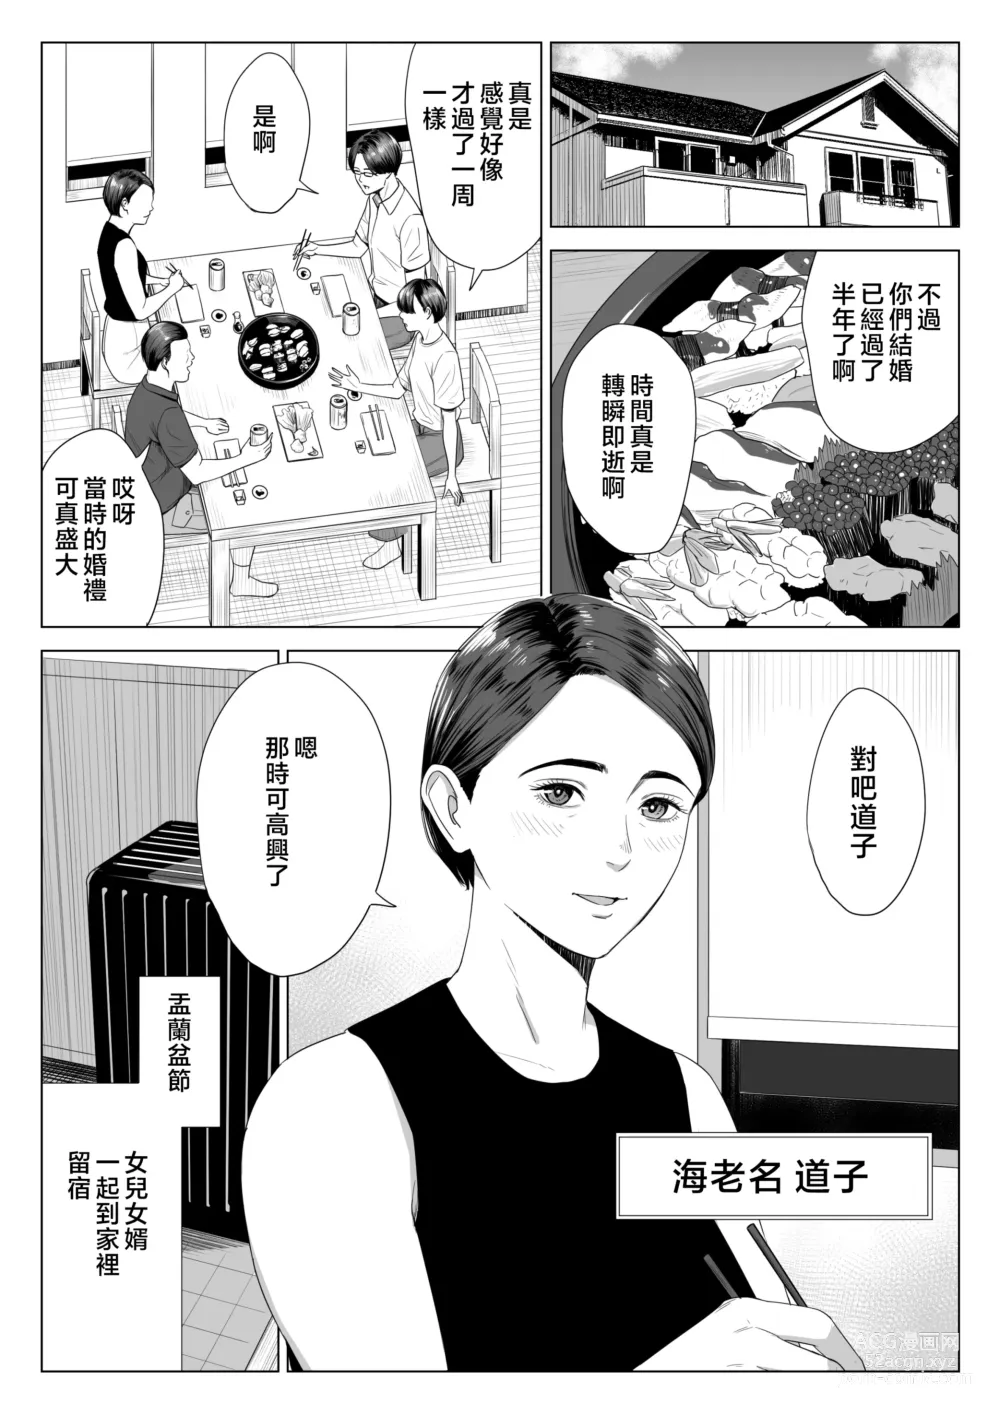 Page 2 of doujinshi Gibo no Tsukaeru Karada.